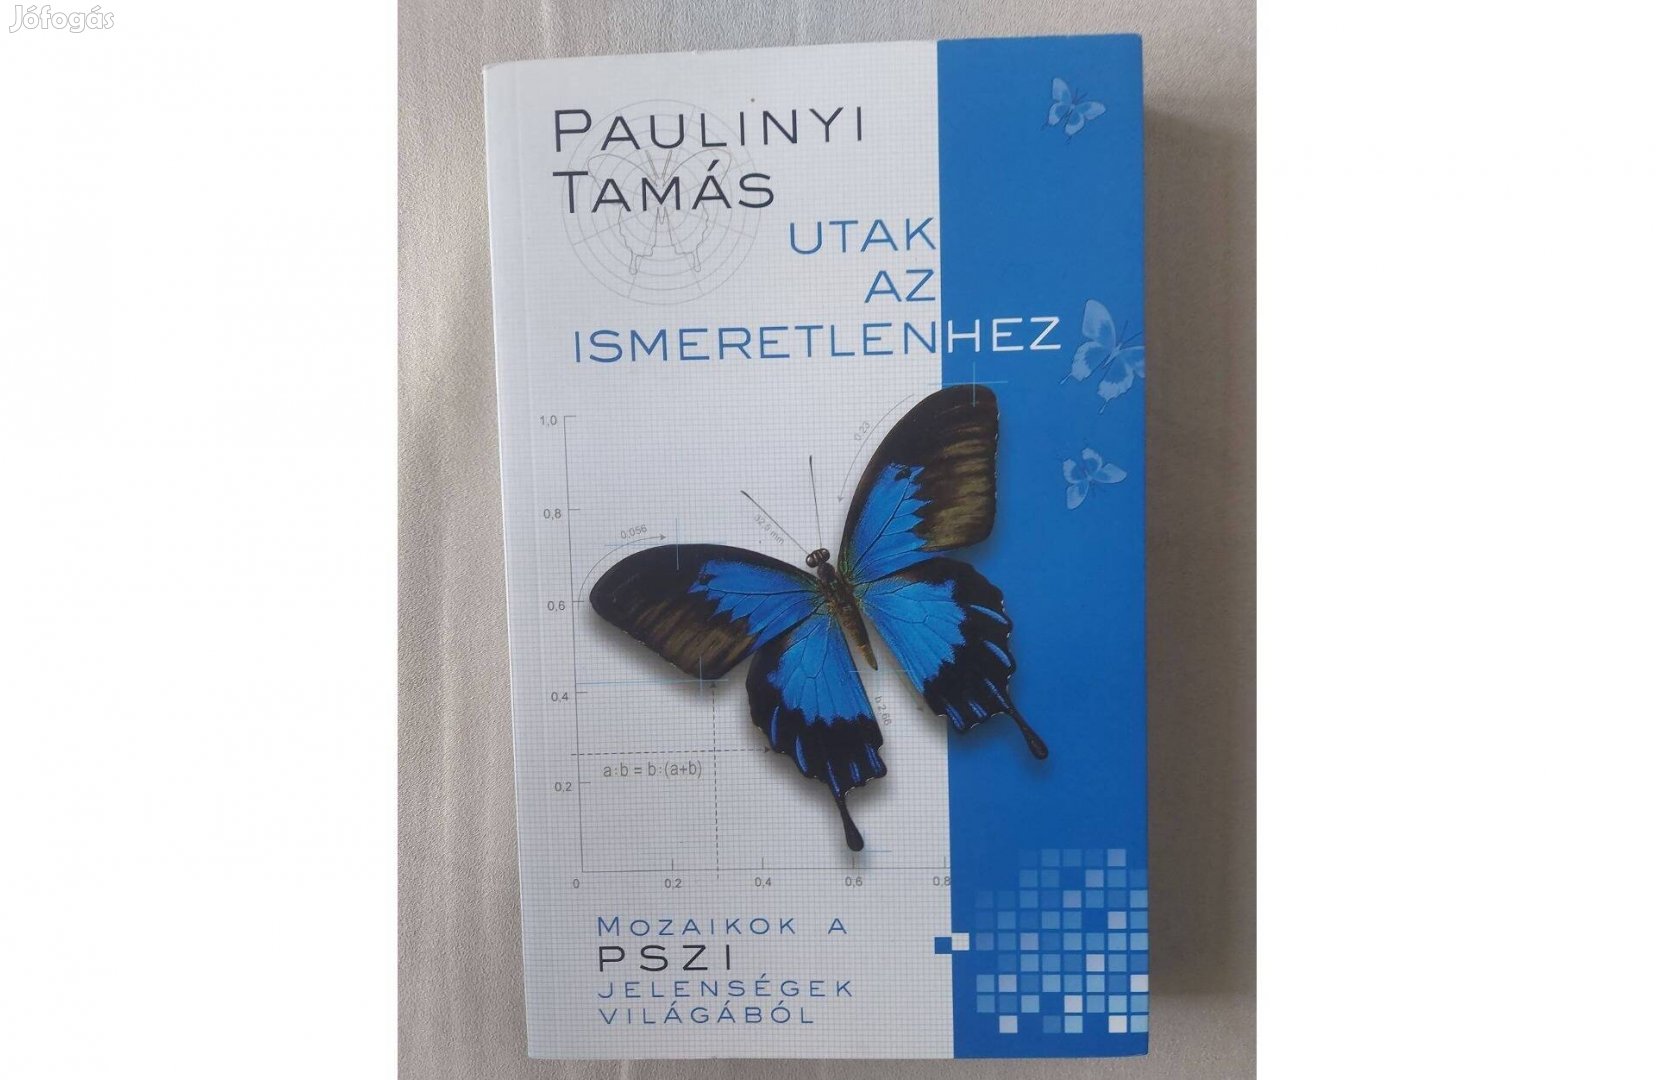 Paulinyi Tamás: Utak az ismeretlenhez (Pilis-Print, 2007)